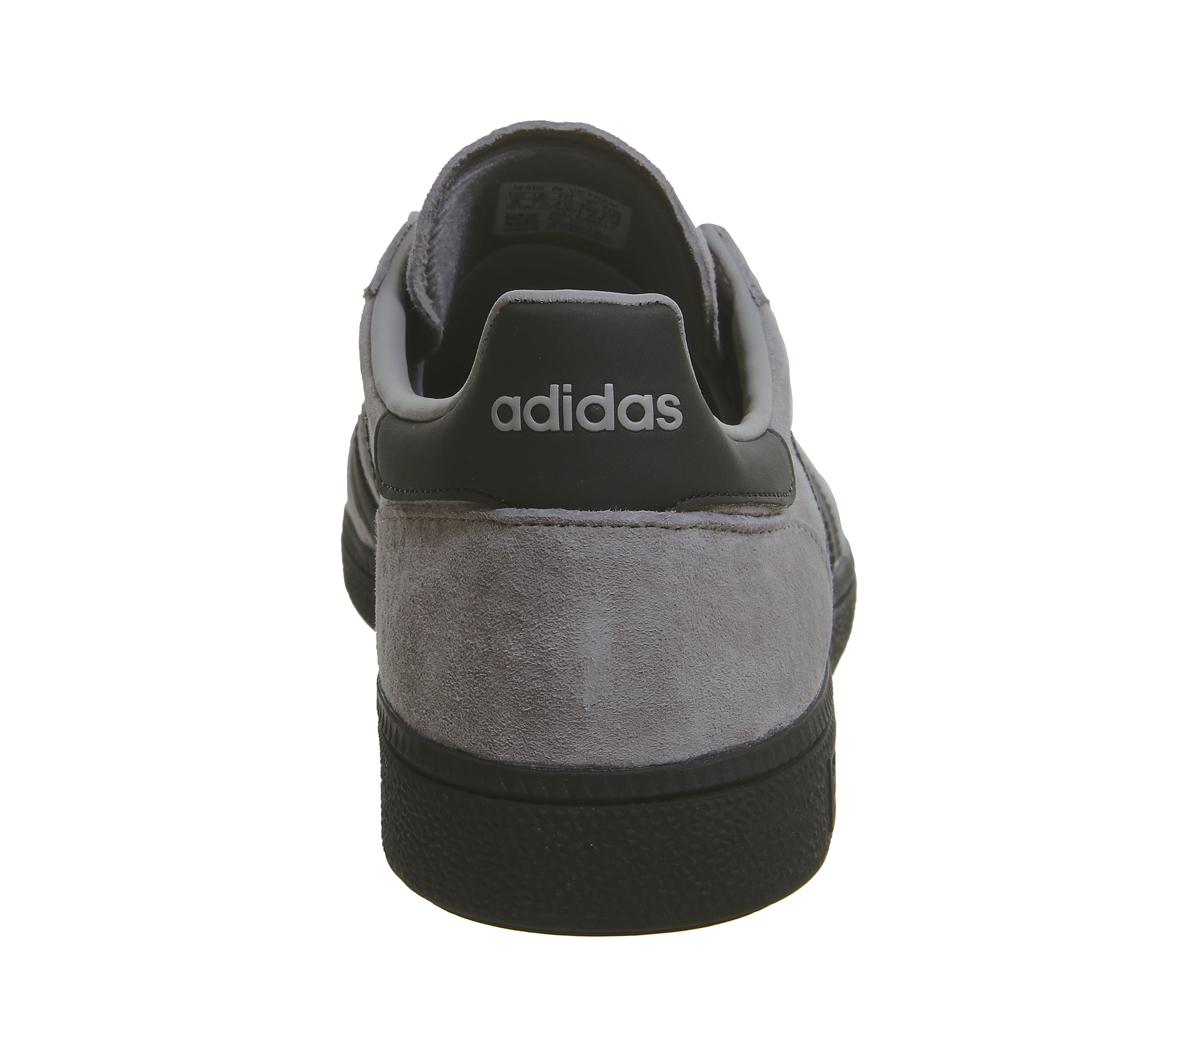 adidas handball spezial solid grey core black silver